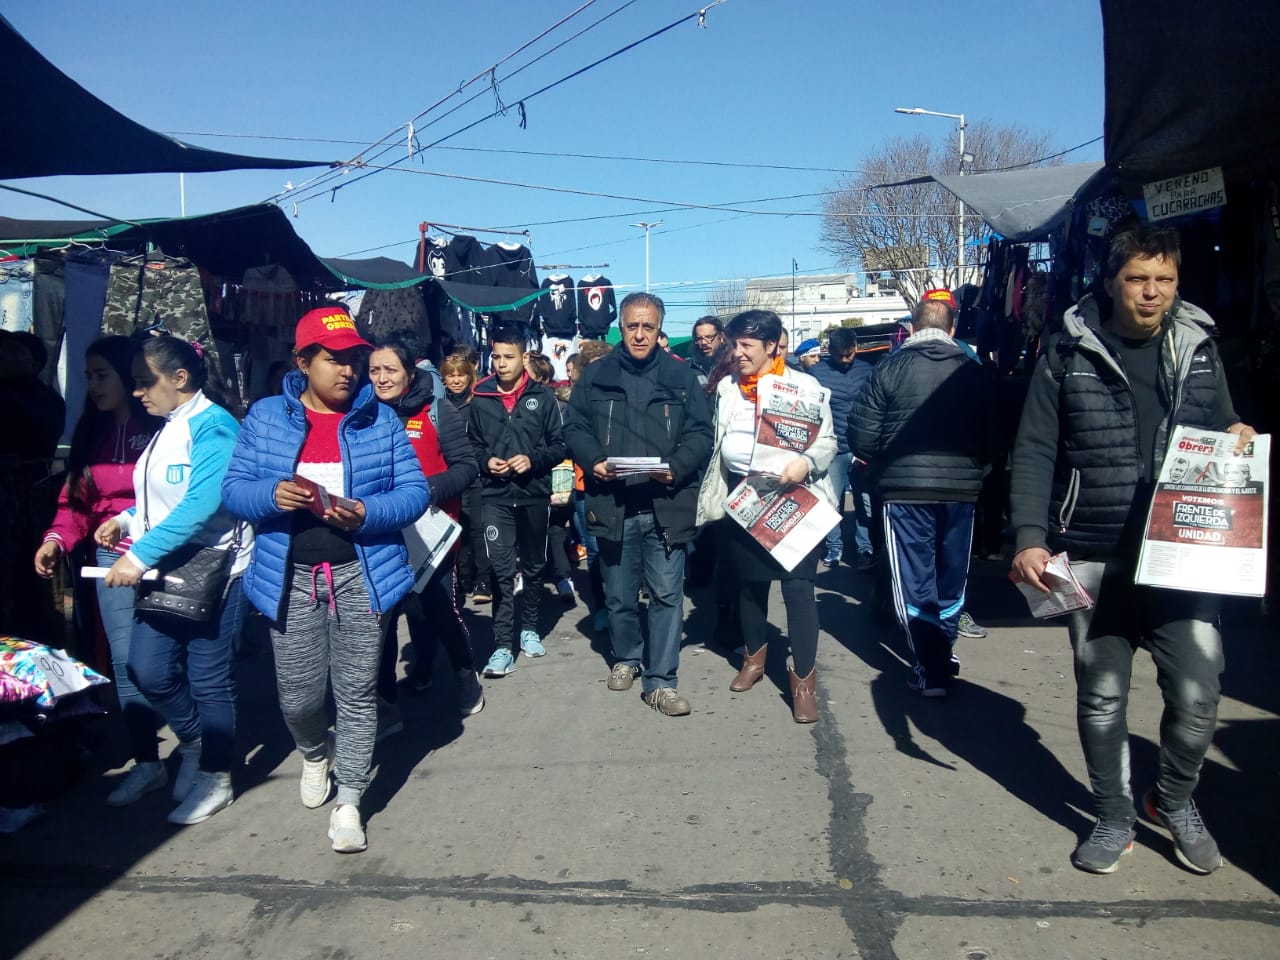 Pitrola desde Villa Dominico, Avellaneda.  “El apoyo de Urquía de Aceitera Gral. Deheza a los Fernández confirma que vienen a devaluar”